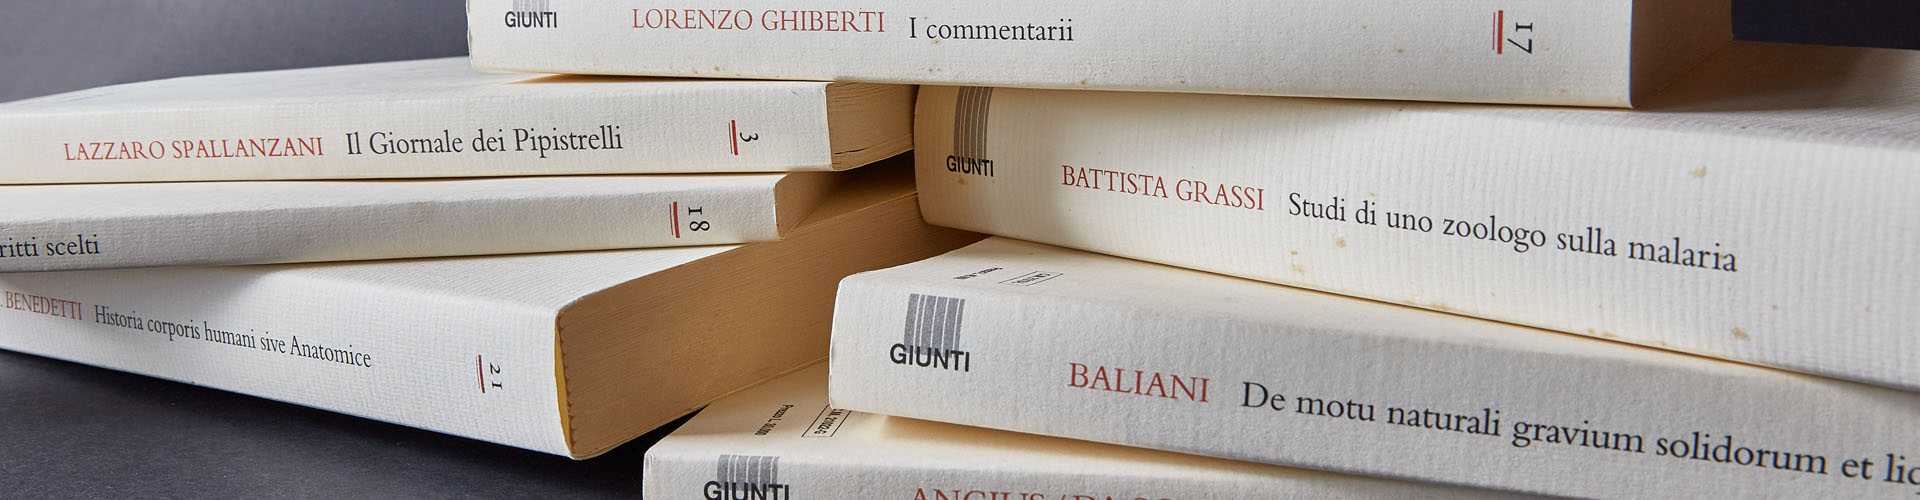 Biblioteca della Scienza Italiana